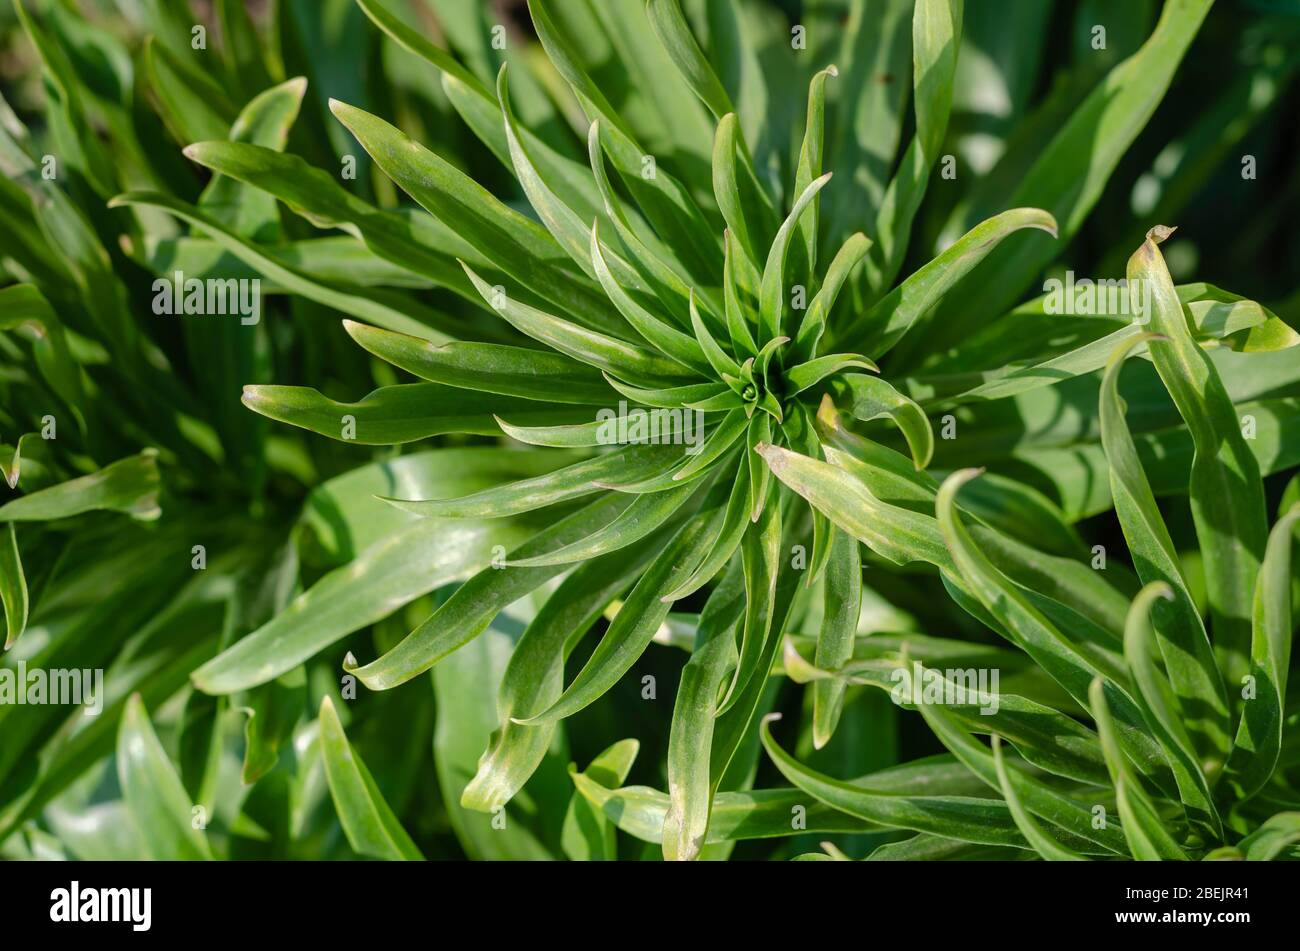 Lily lanceolate ou brindle (Llium lancifolium). Feuilles vertes d'une brousse d'un tigre sans fleurs. Poutres apparentes sur feuilles vertes. Vue de dessus. S Banque D'Images